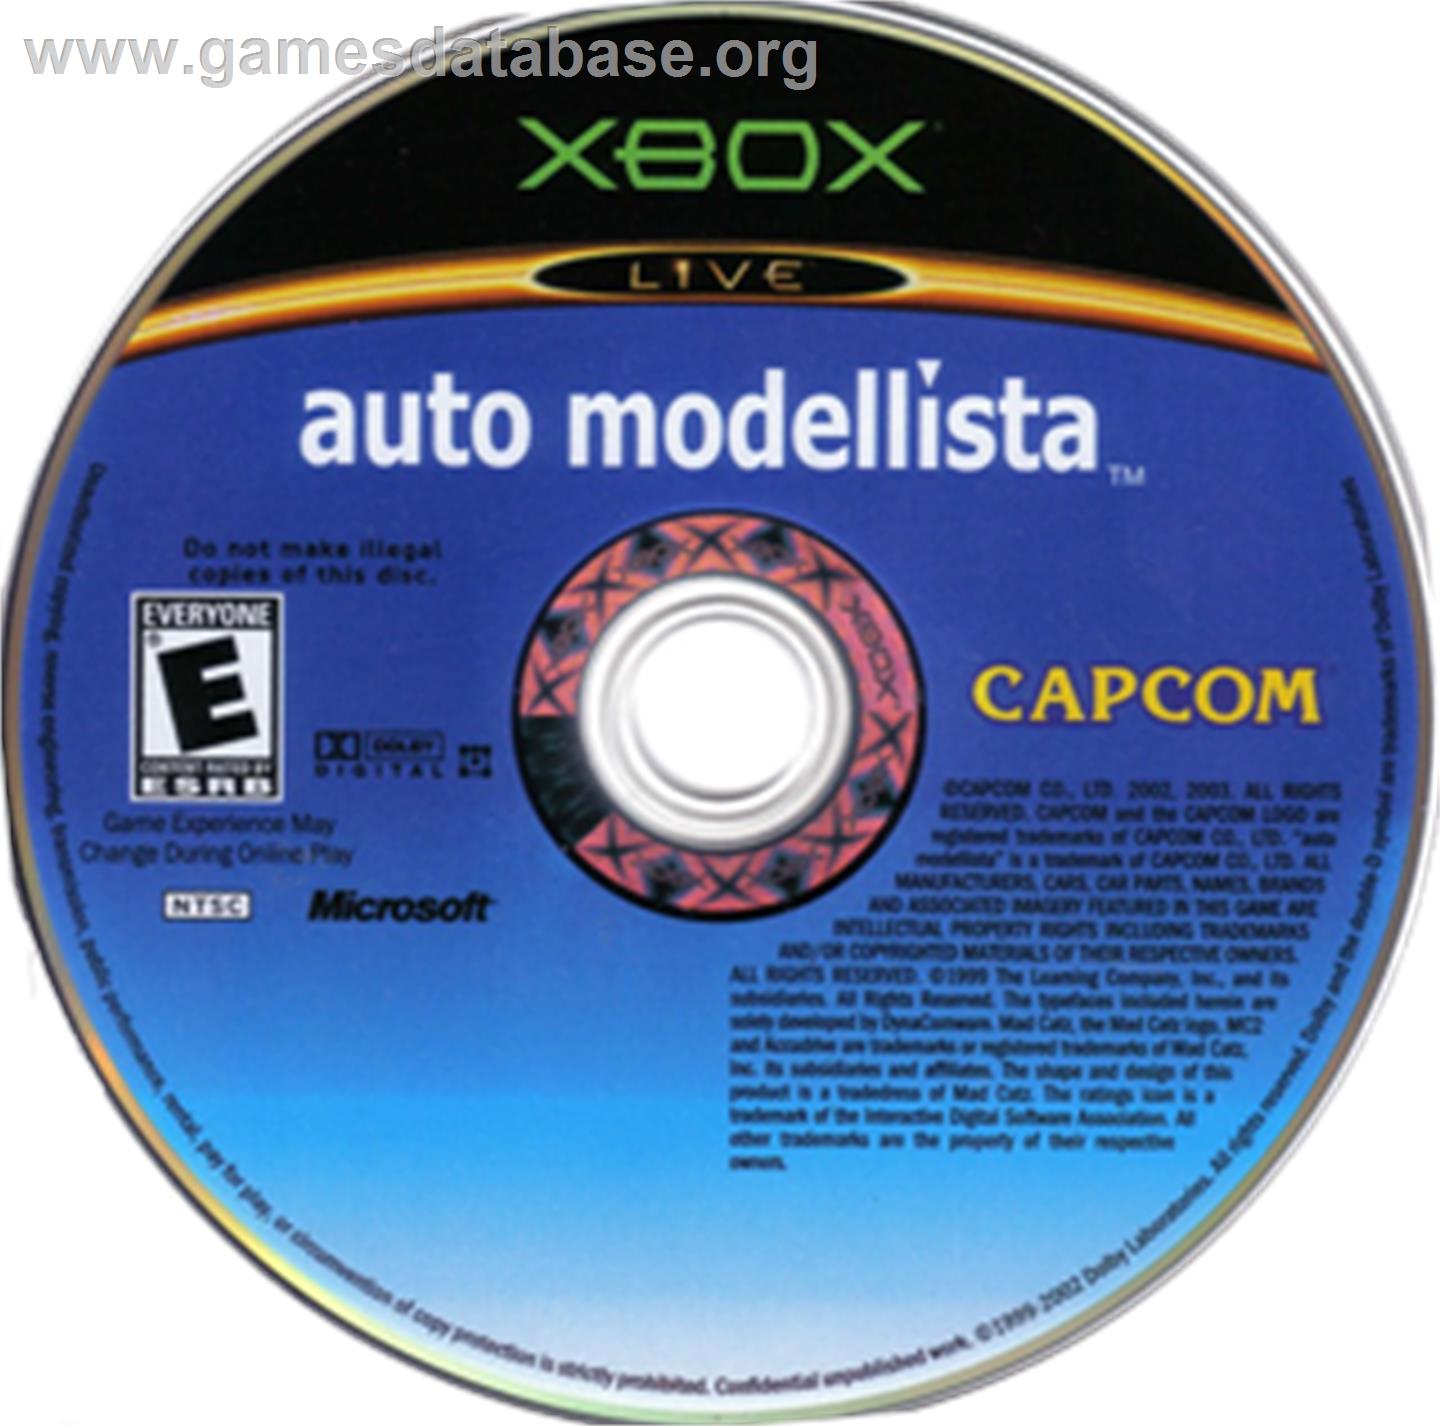 Auto Modellista - Microsoft Xbox - Artwork - CD